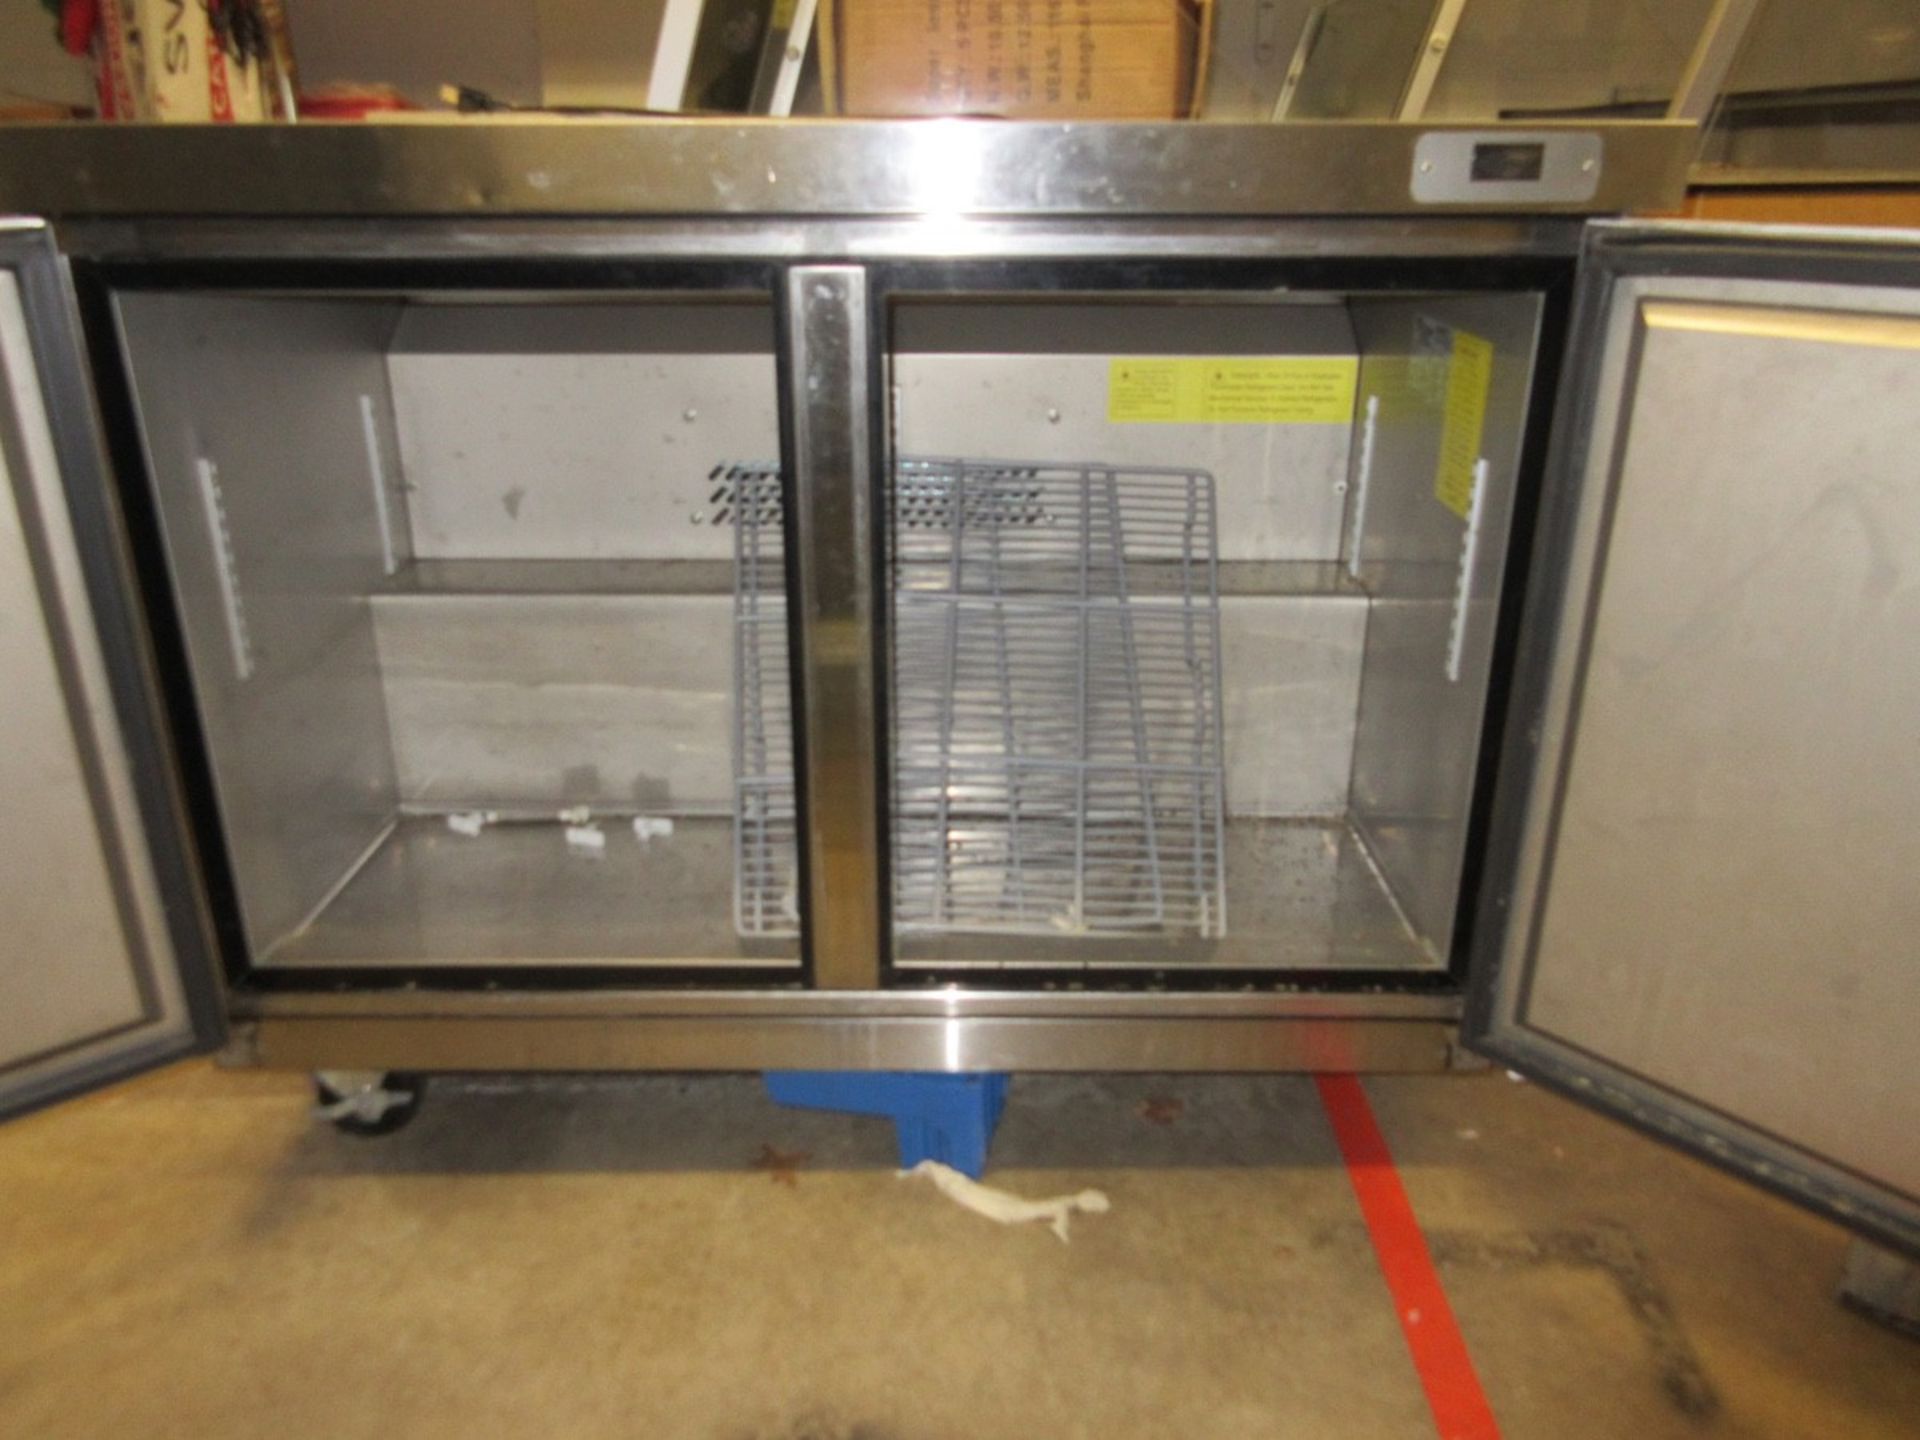 (1) Titan Xtuf48 2-Door Chest Refrigerator, S.S., Port. - Image 2 of 3